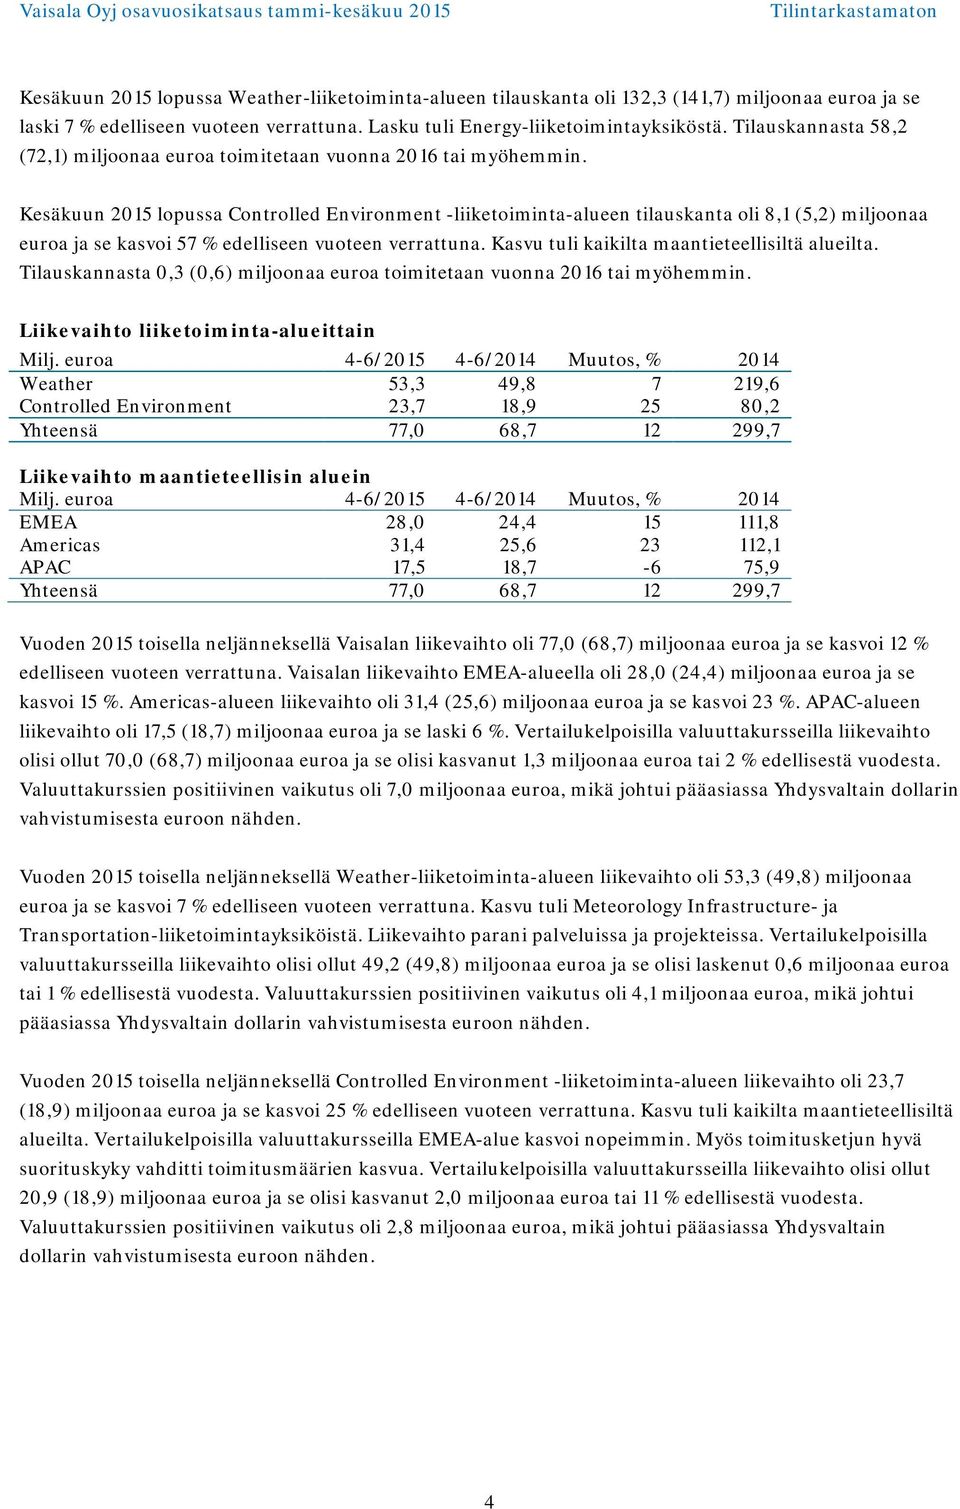 Kesäkuun lopussa Controlled Environment -liiketoiminta-alueen tilauskanta oli 8,1 (5,2) miljoonaa euroa ja se kasvoi 57 % edelliseen vuoteen verrattuna.